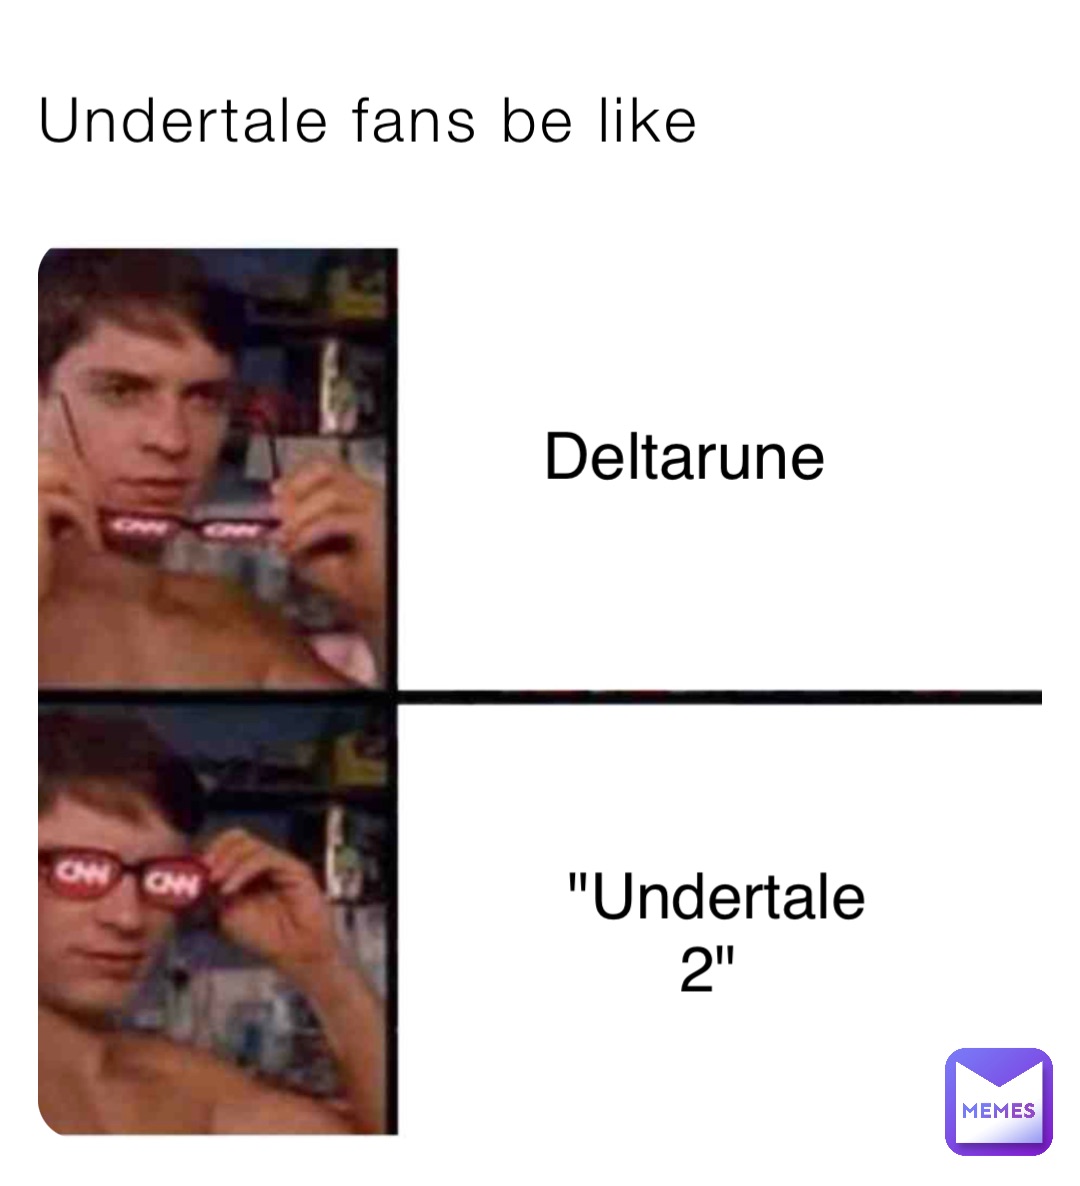 Undertale fans be like Deltarune "Undertale 2"